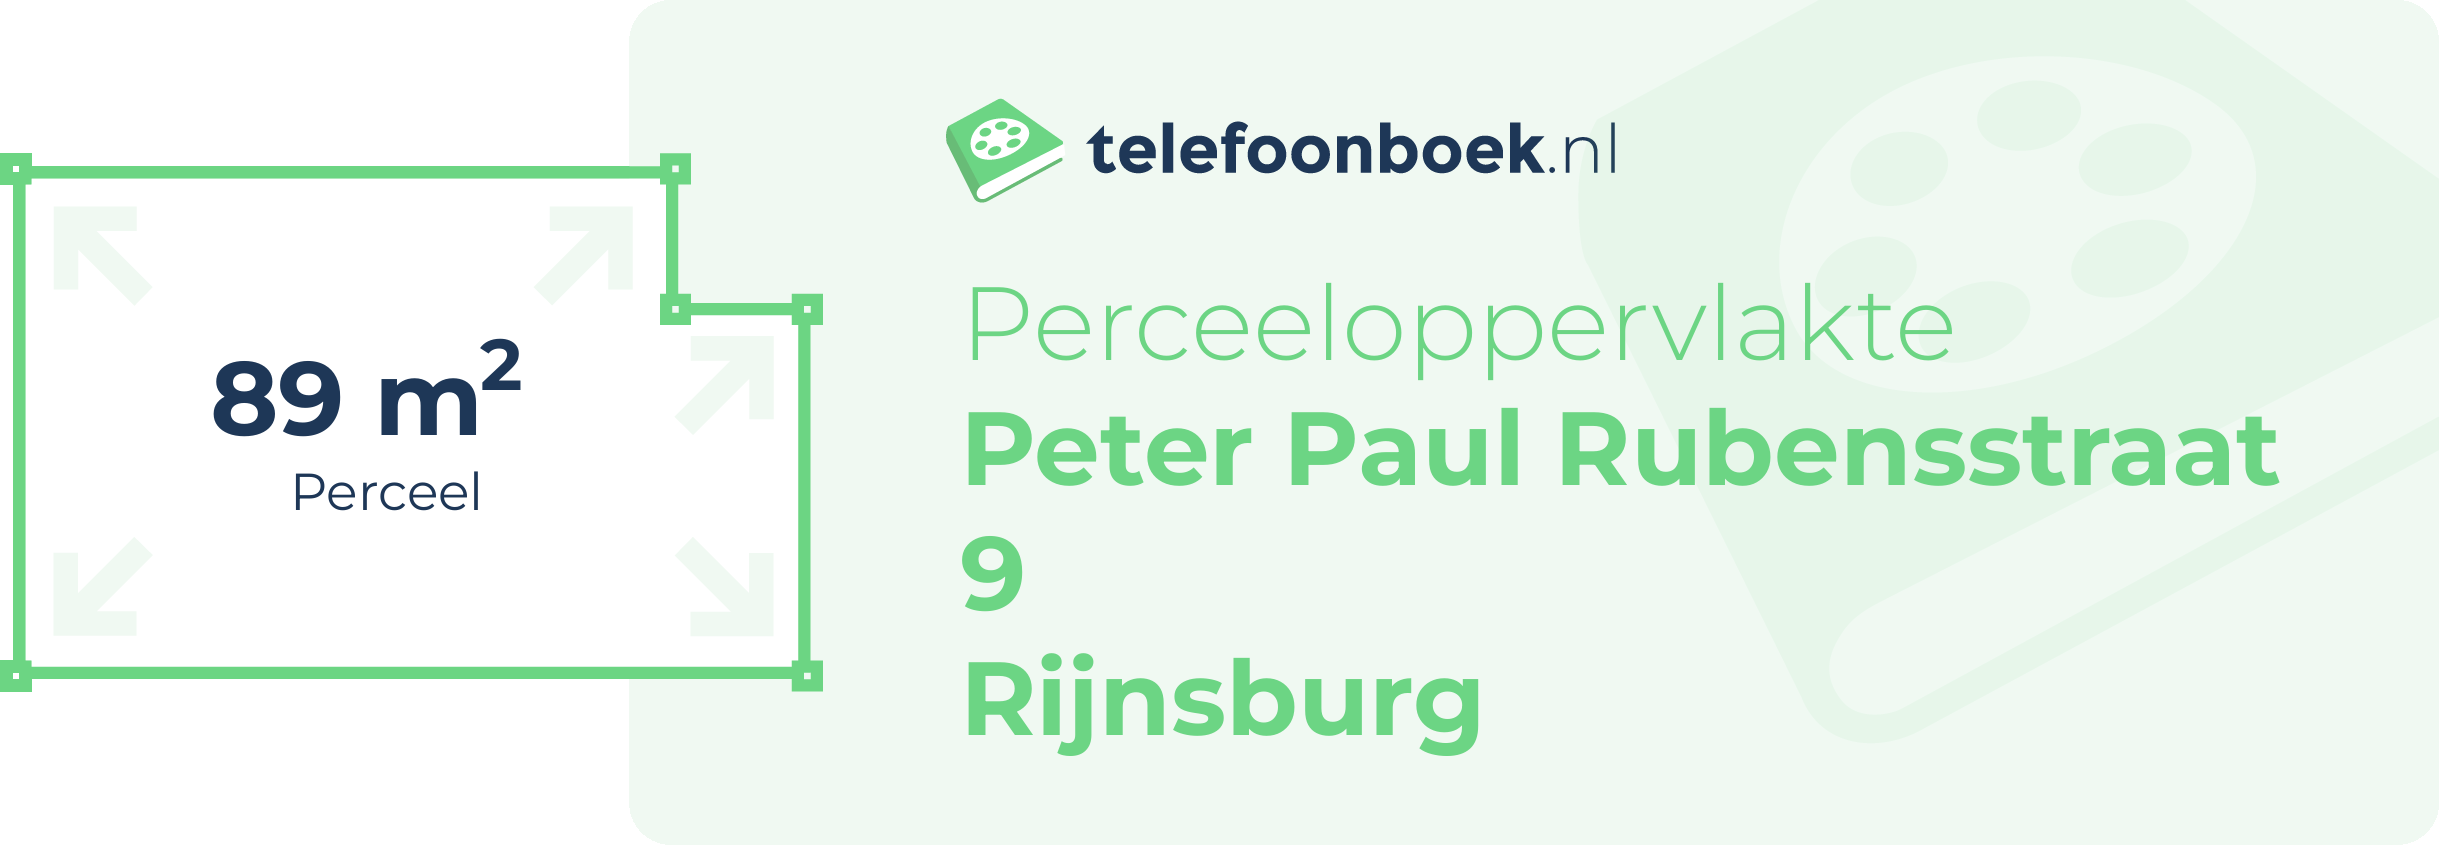 Perceeloppervlakte Peter Paul Rubensstraat 9 Rijnsburg